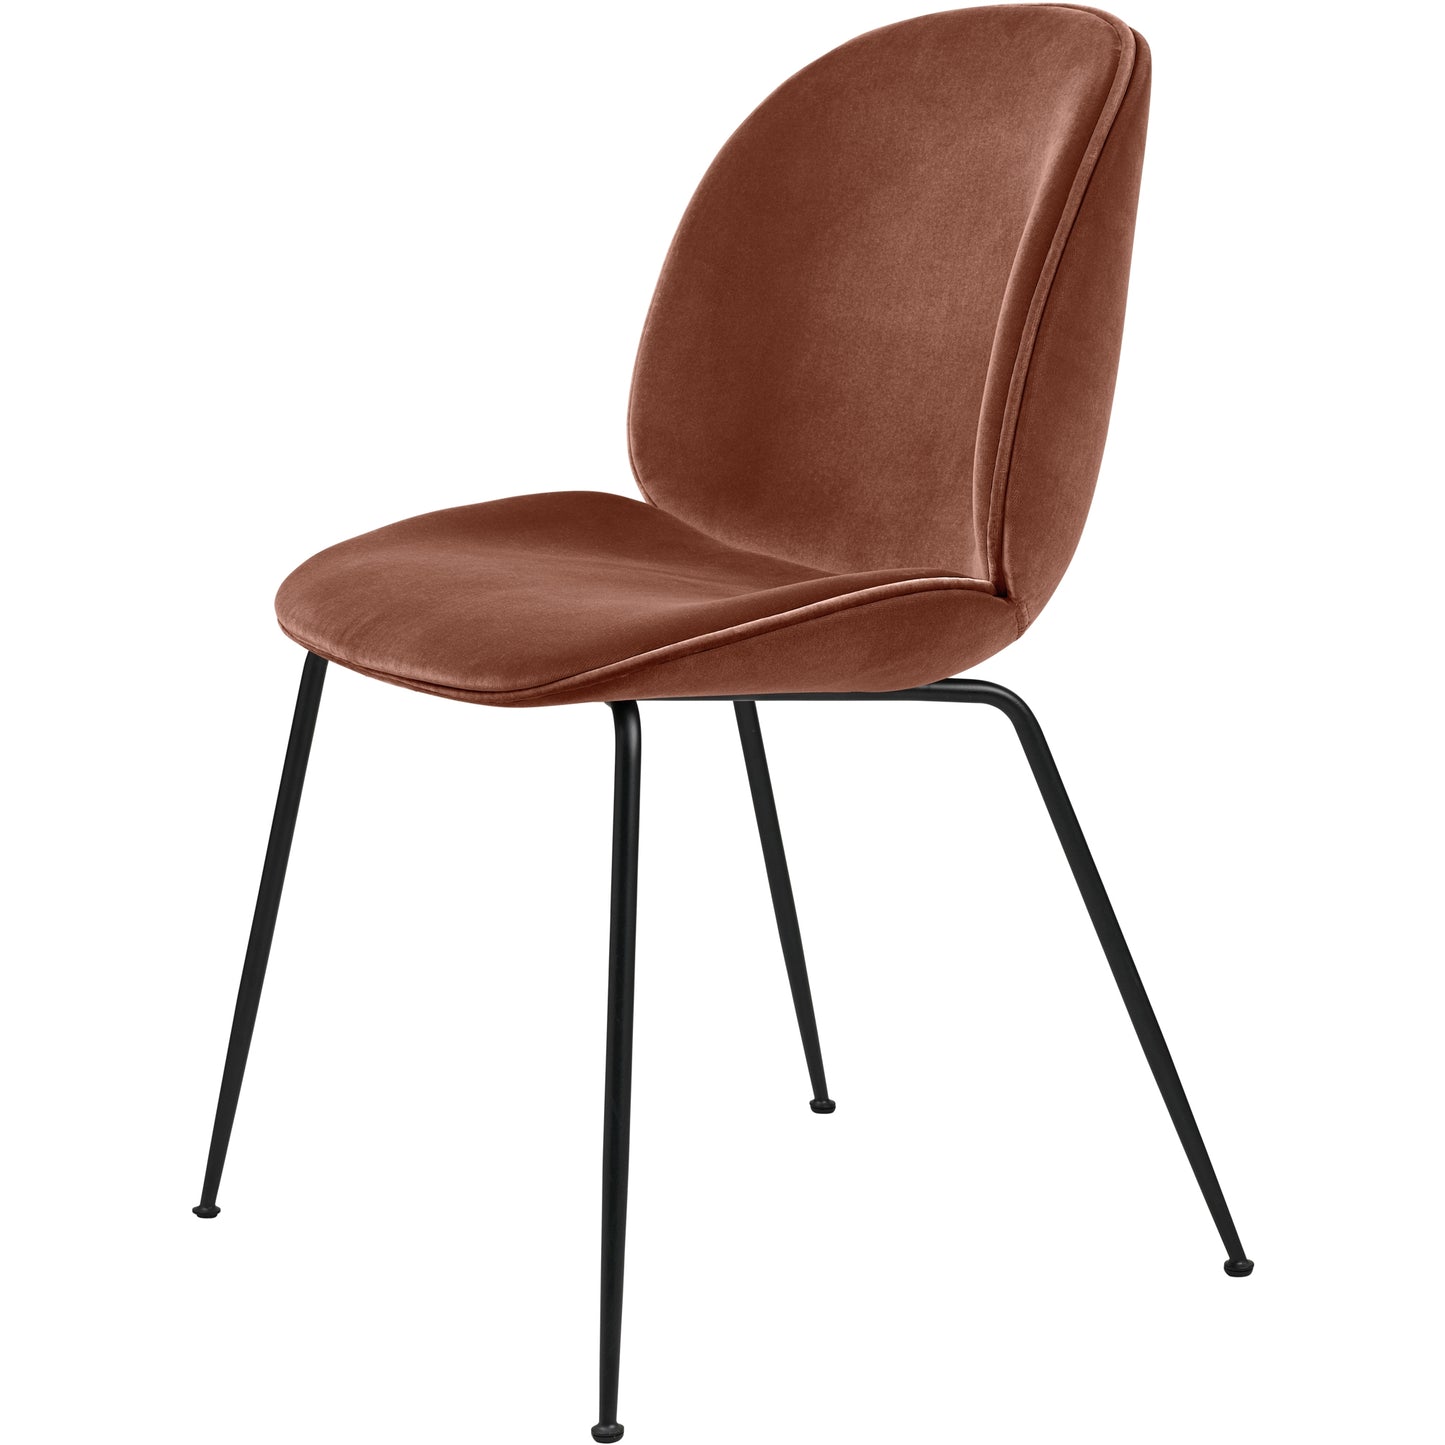 Beetle Dining Chair Upholstered Conic Base by GUBI #Matt Black/ Velvet 641 Rusty Red